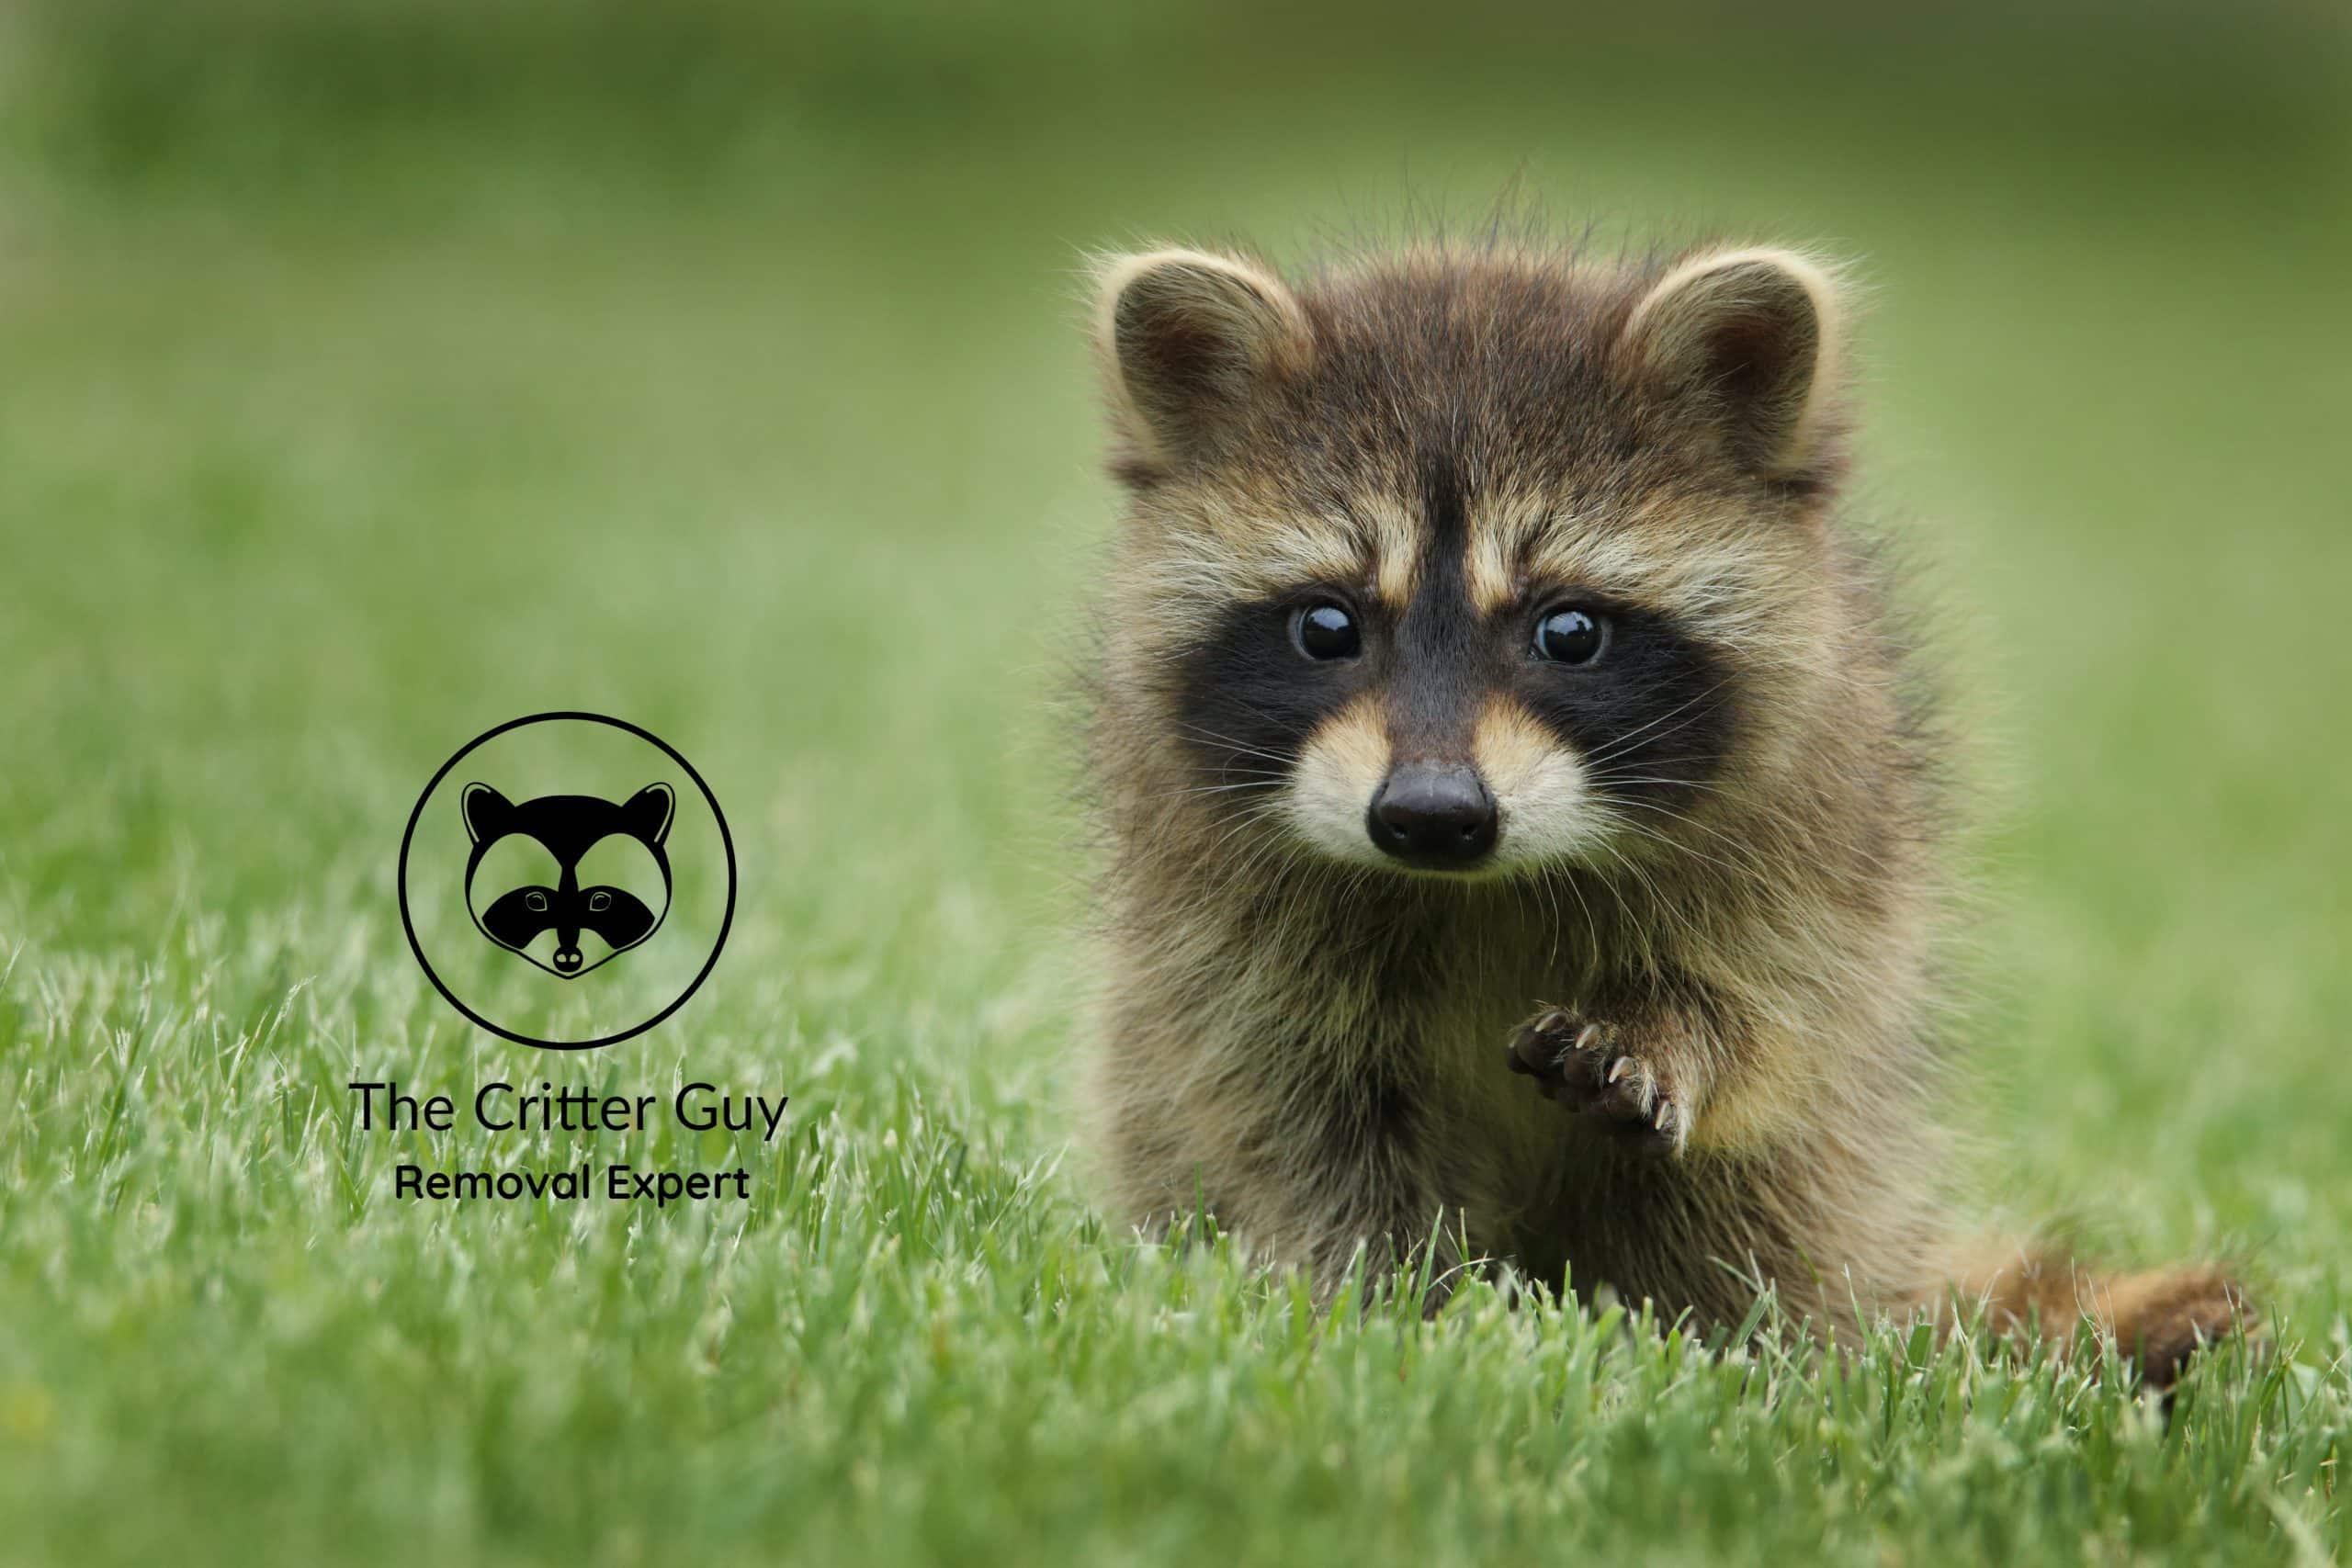 raccoon baby in grass field